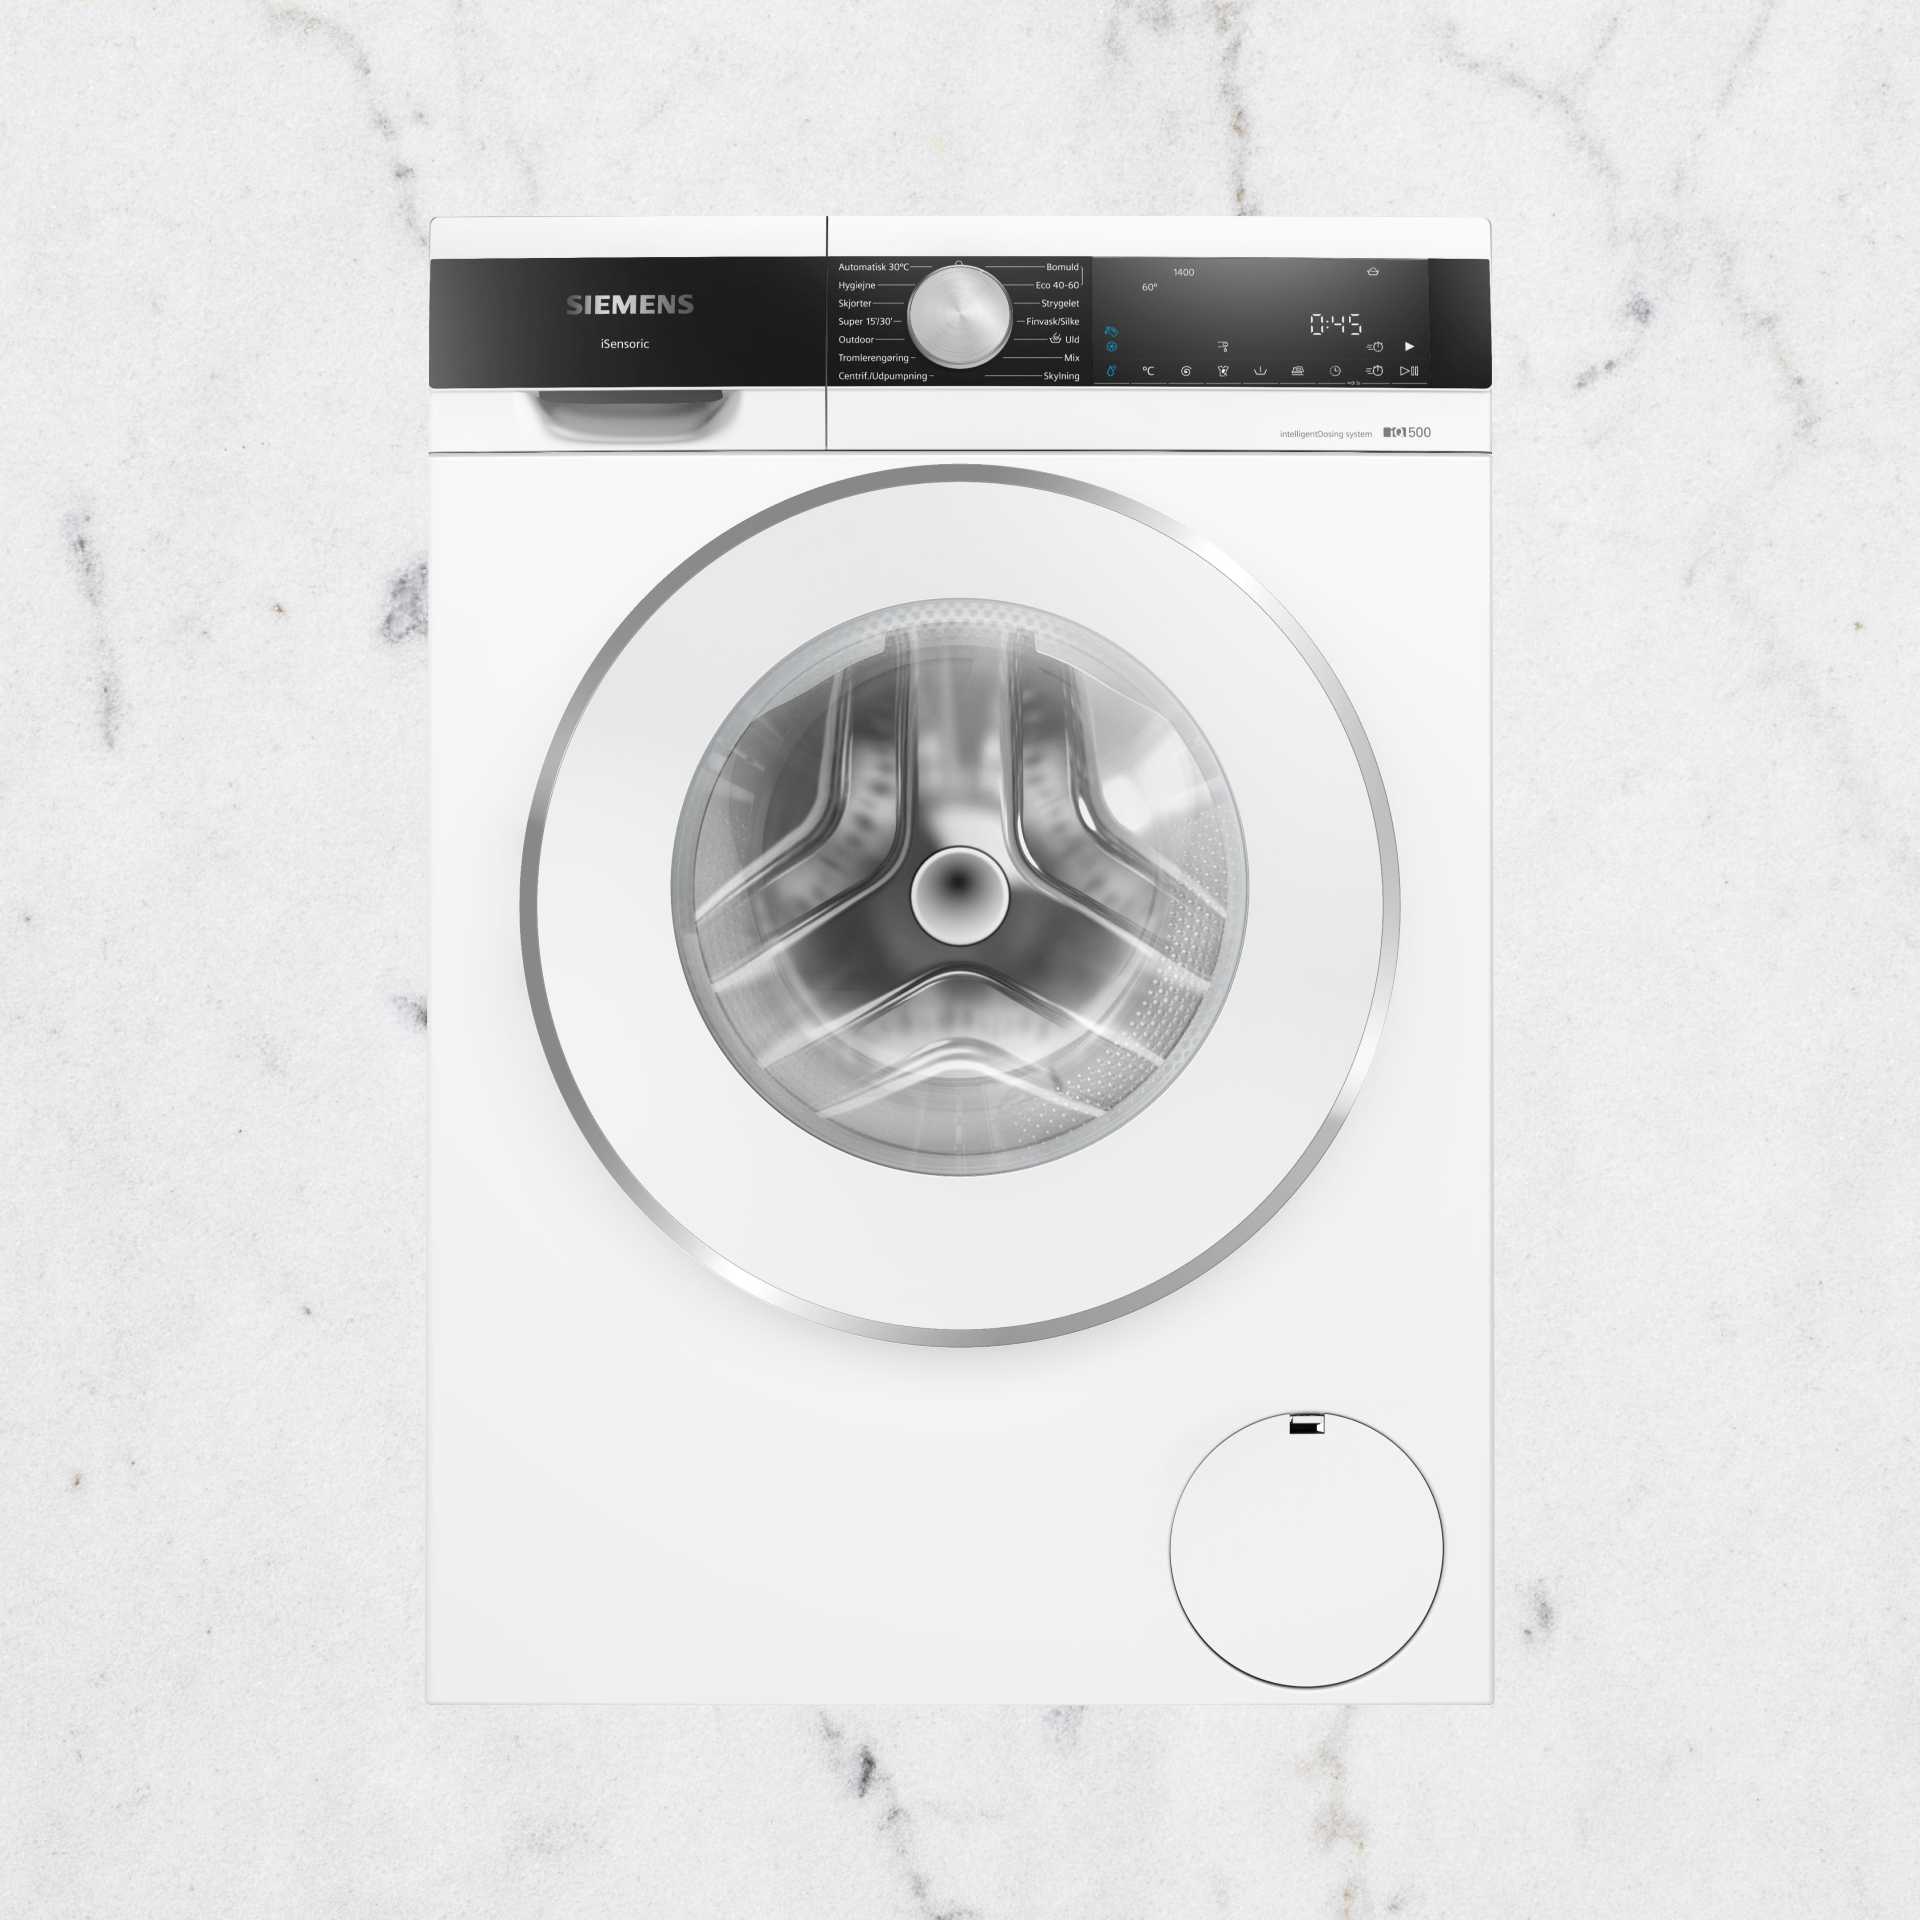 Siemens laundry machine